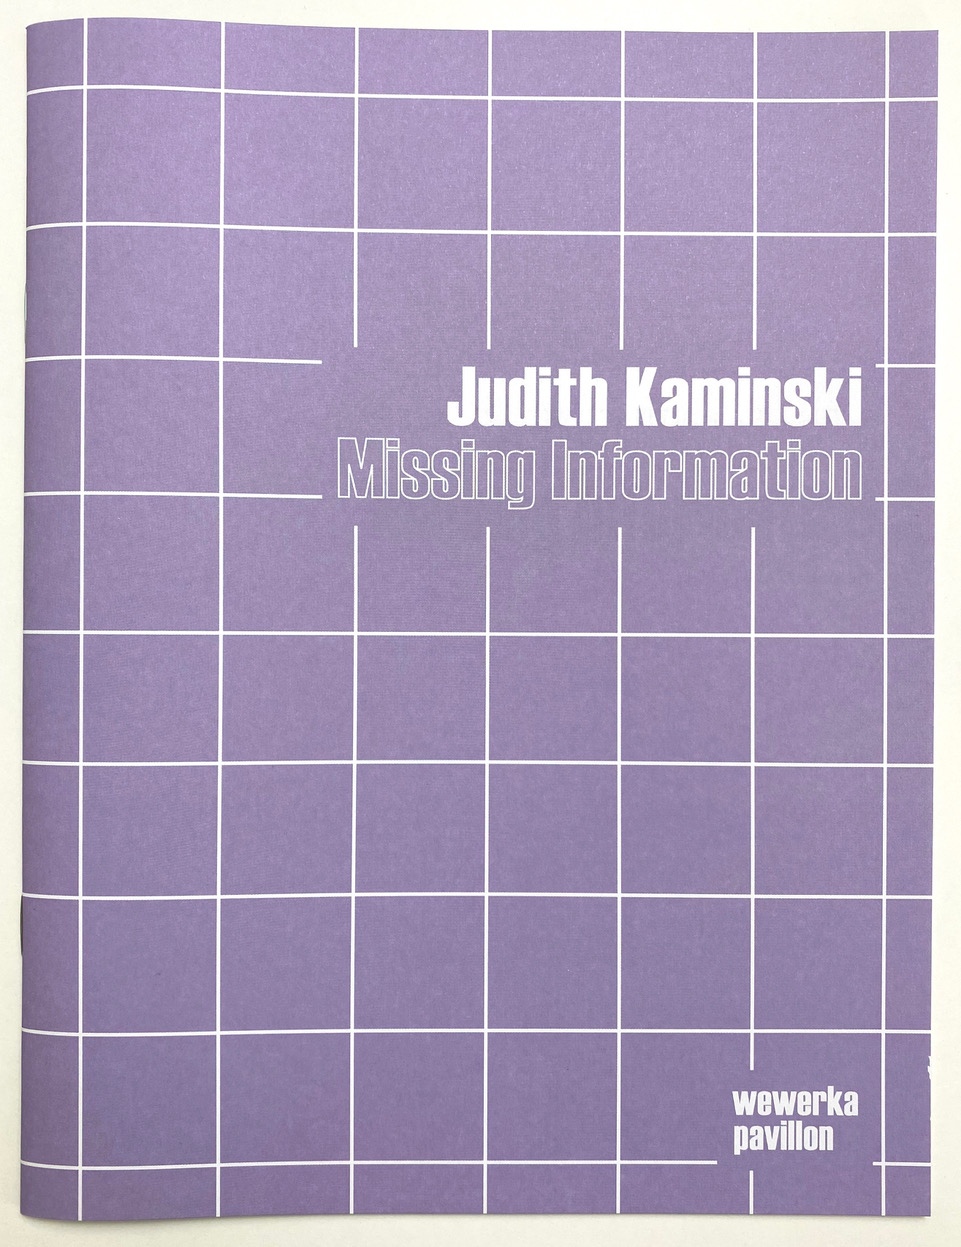 Judith Kaminski